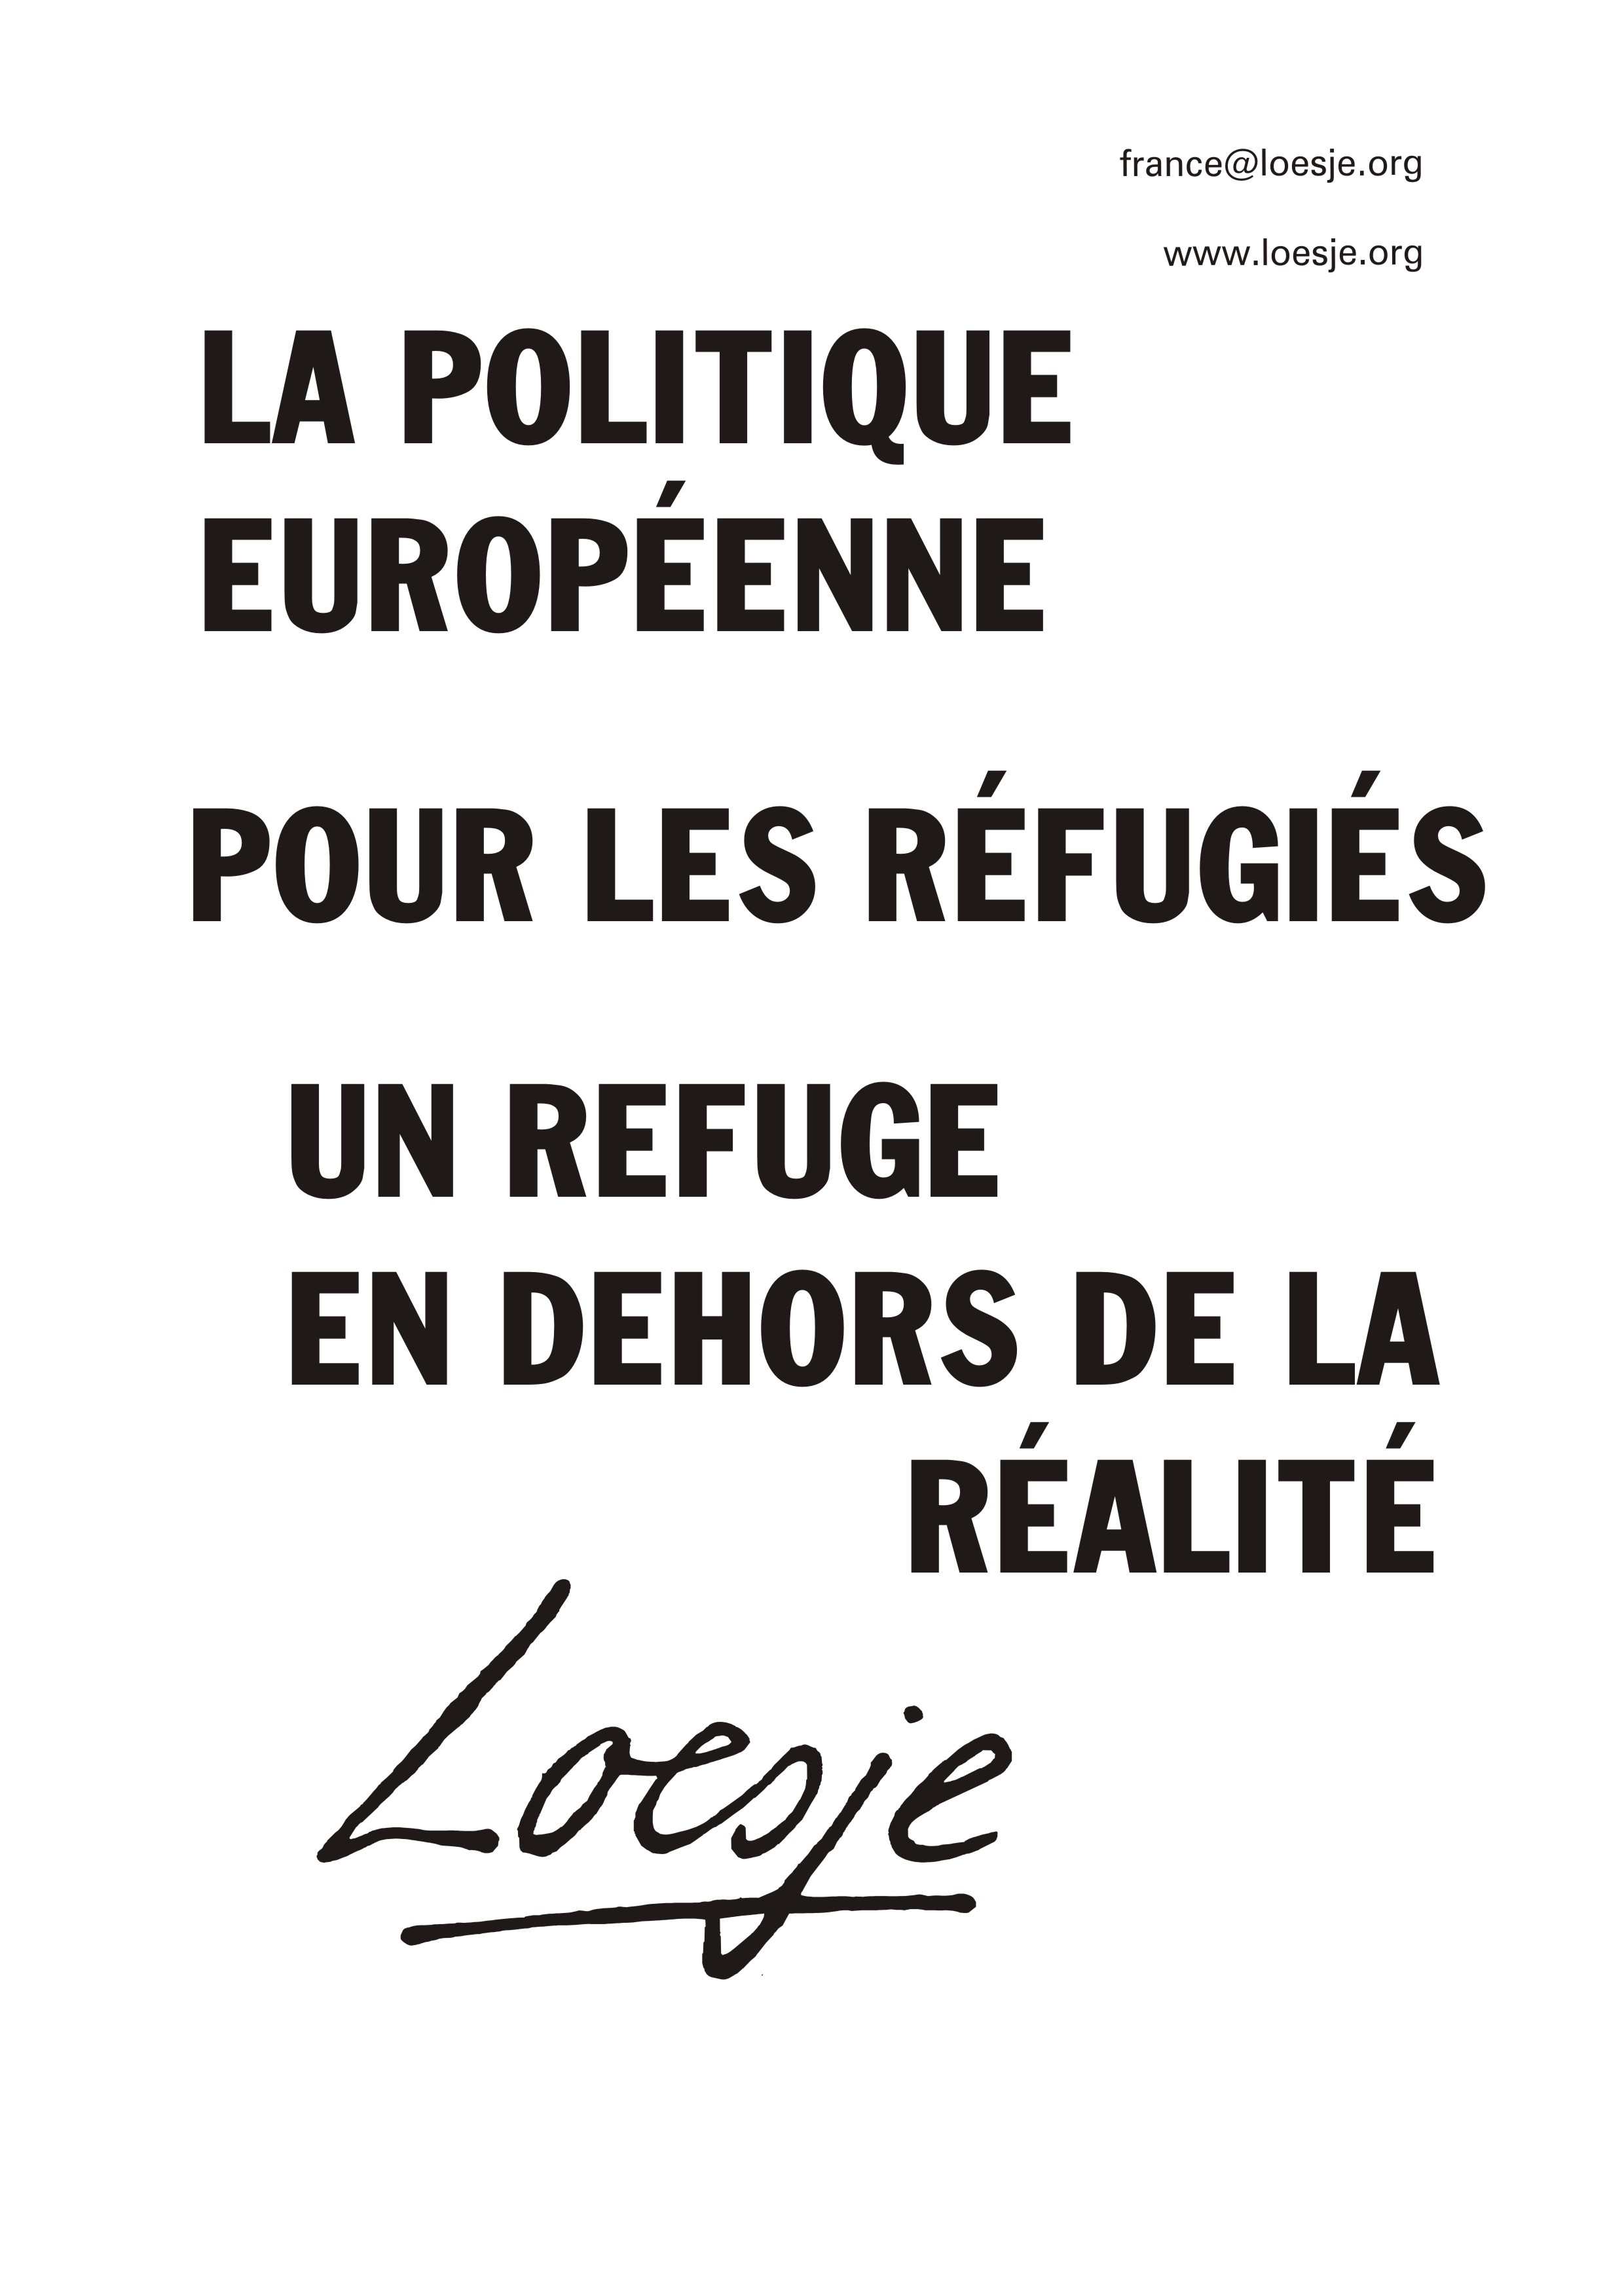 10 La politique européenne pour les réfugiés un refuge en dehors de la réalité